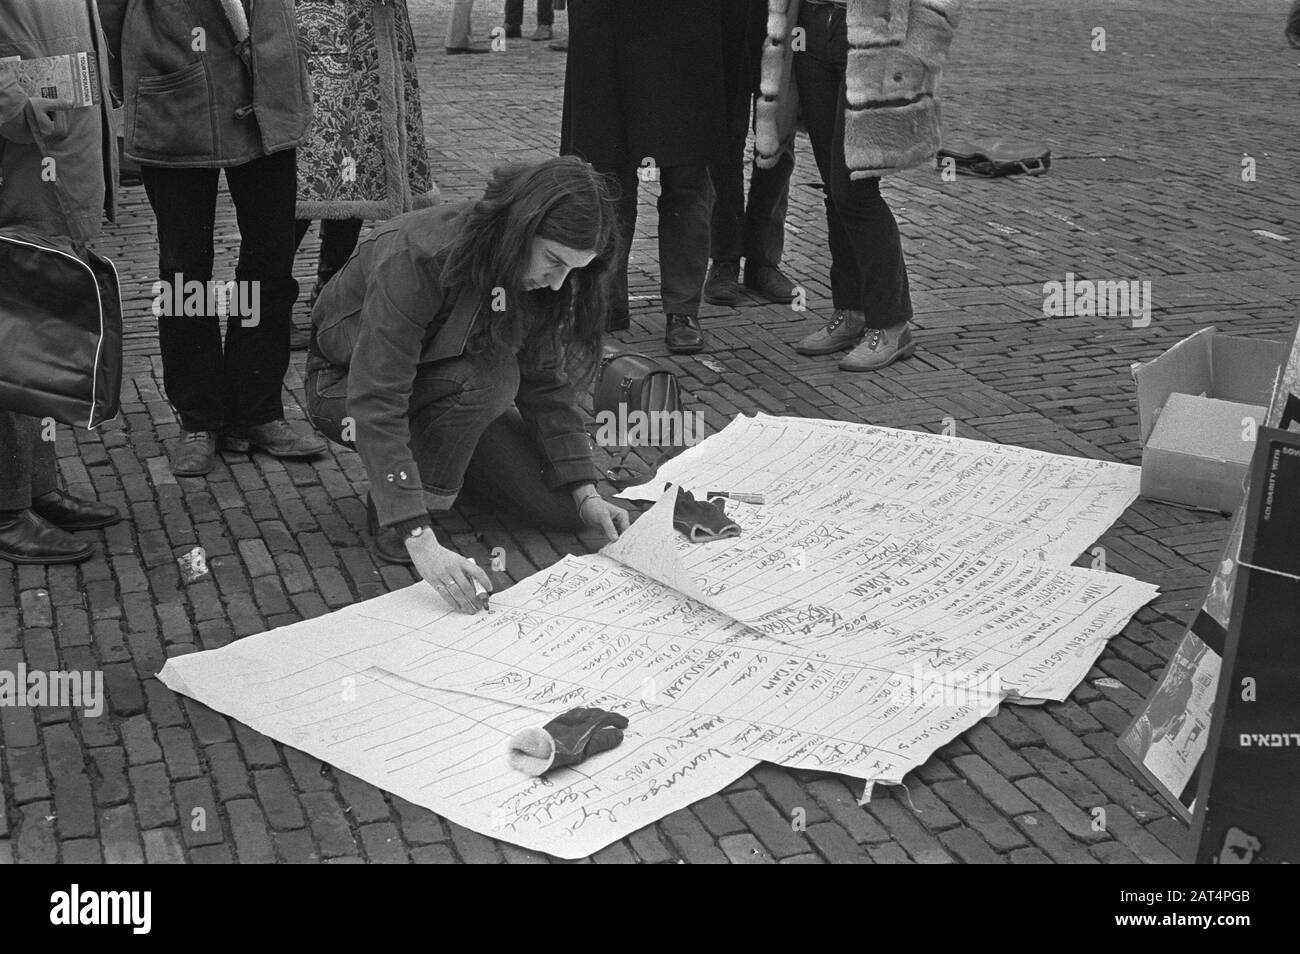 Jüdische Jugendliche sammeln Unterschriften gegen Folterjuden in arabischen Ländern und behandeln Juden in Russland am Leidseplein Amsterdam/Datum: 10. Dezember 1971 Ort: Amsterdam, Nordholland Schlüsselwörter: Signes, JUGEND Stockfoto